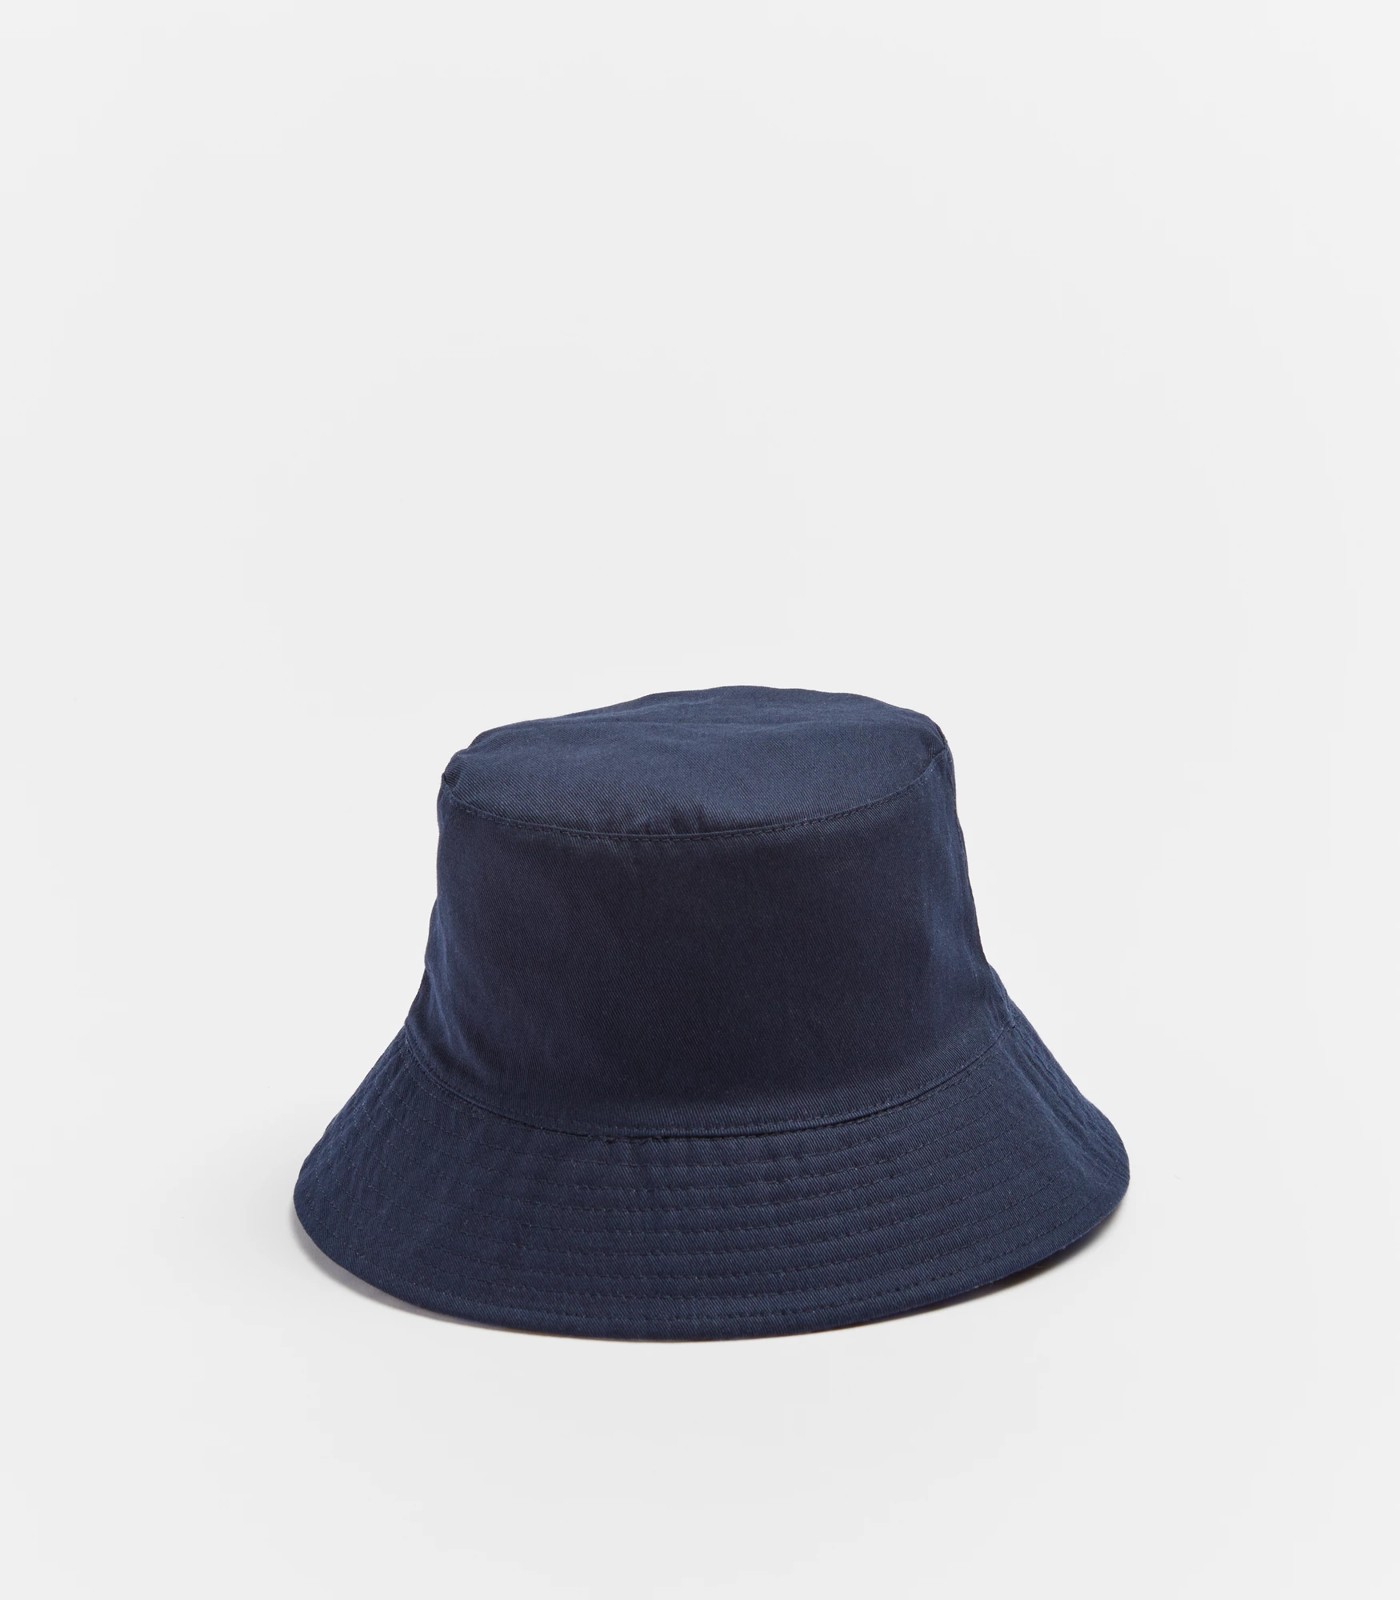 Kids Reversible Printed Bucket Hat - Tie Dye/Navy Blue | Target Australia